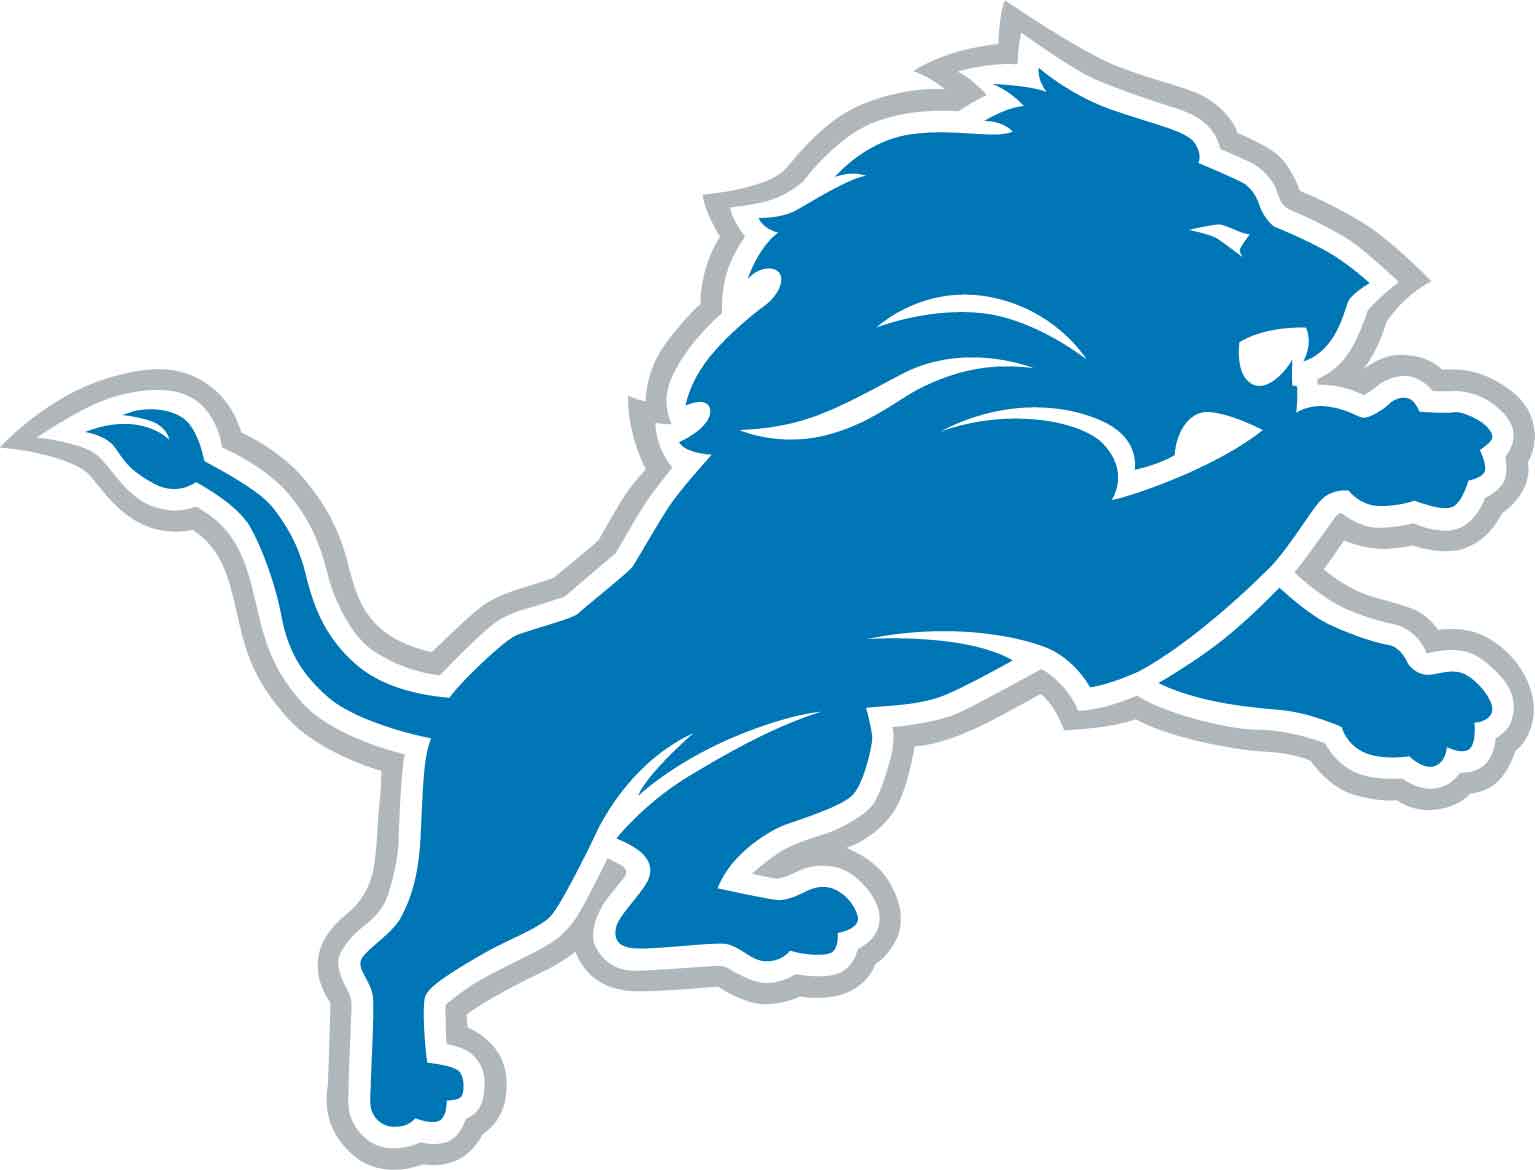 Detroit Lions mark